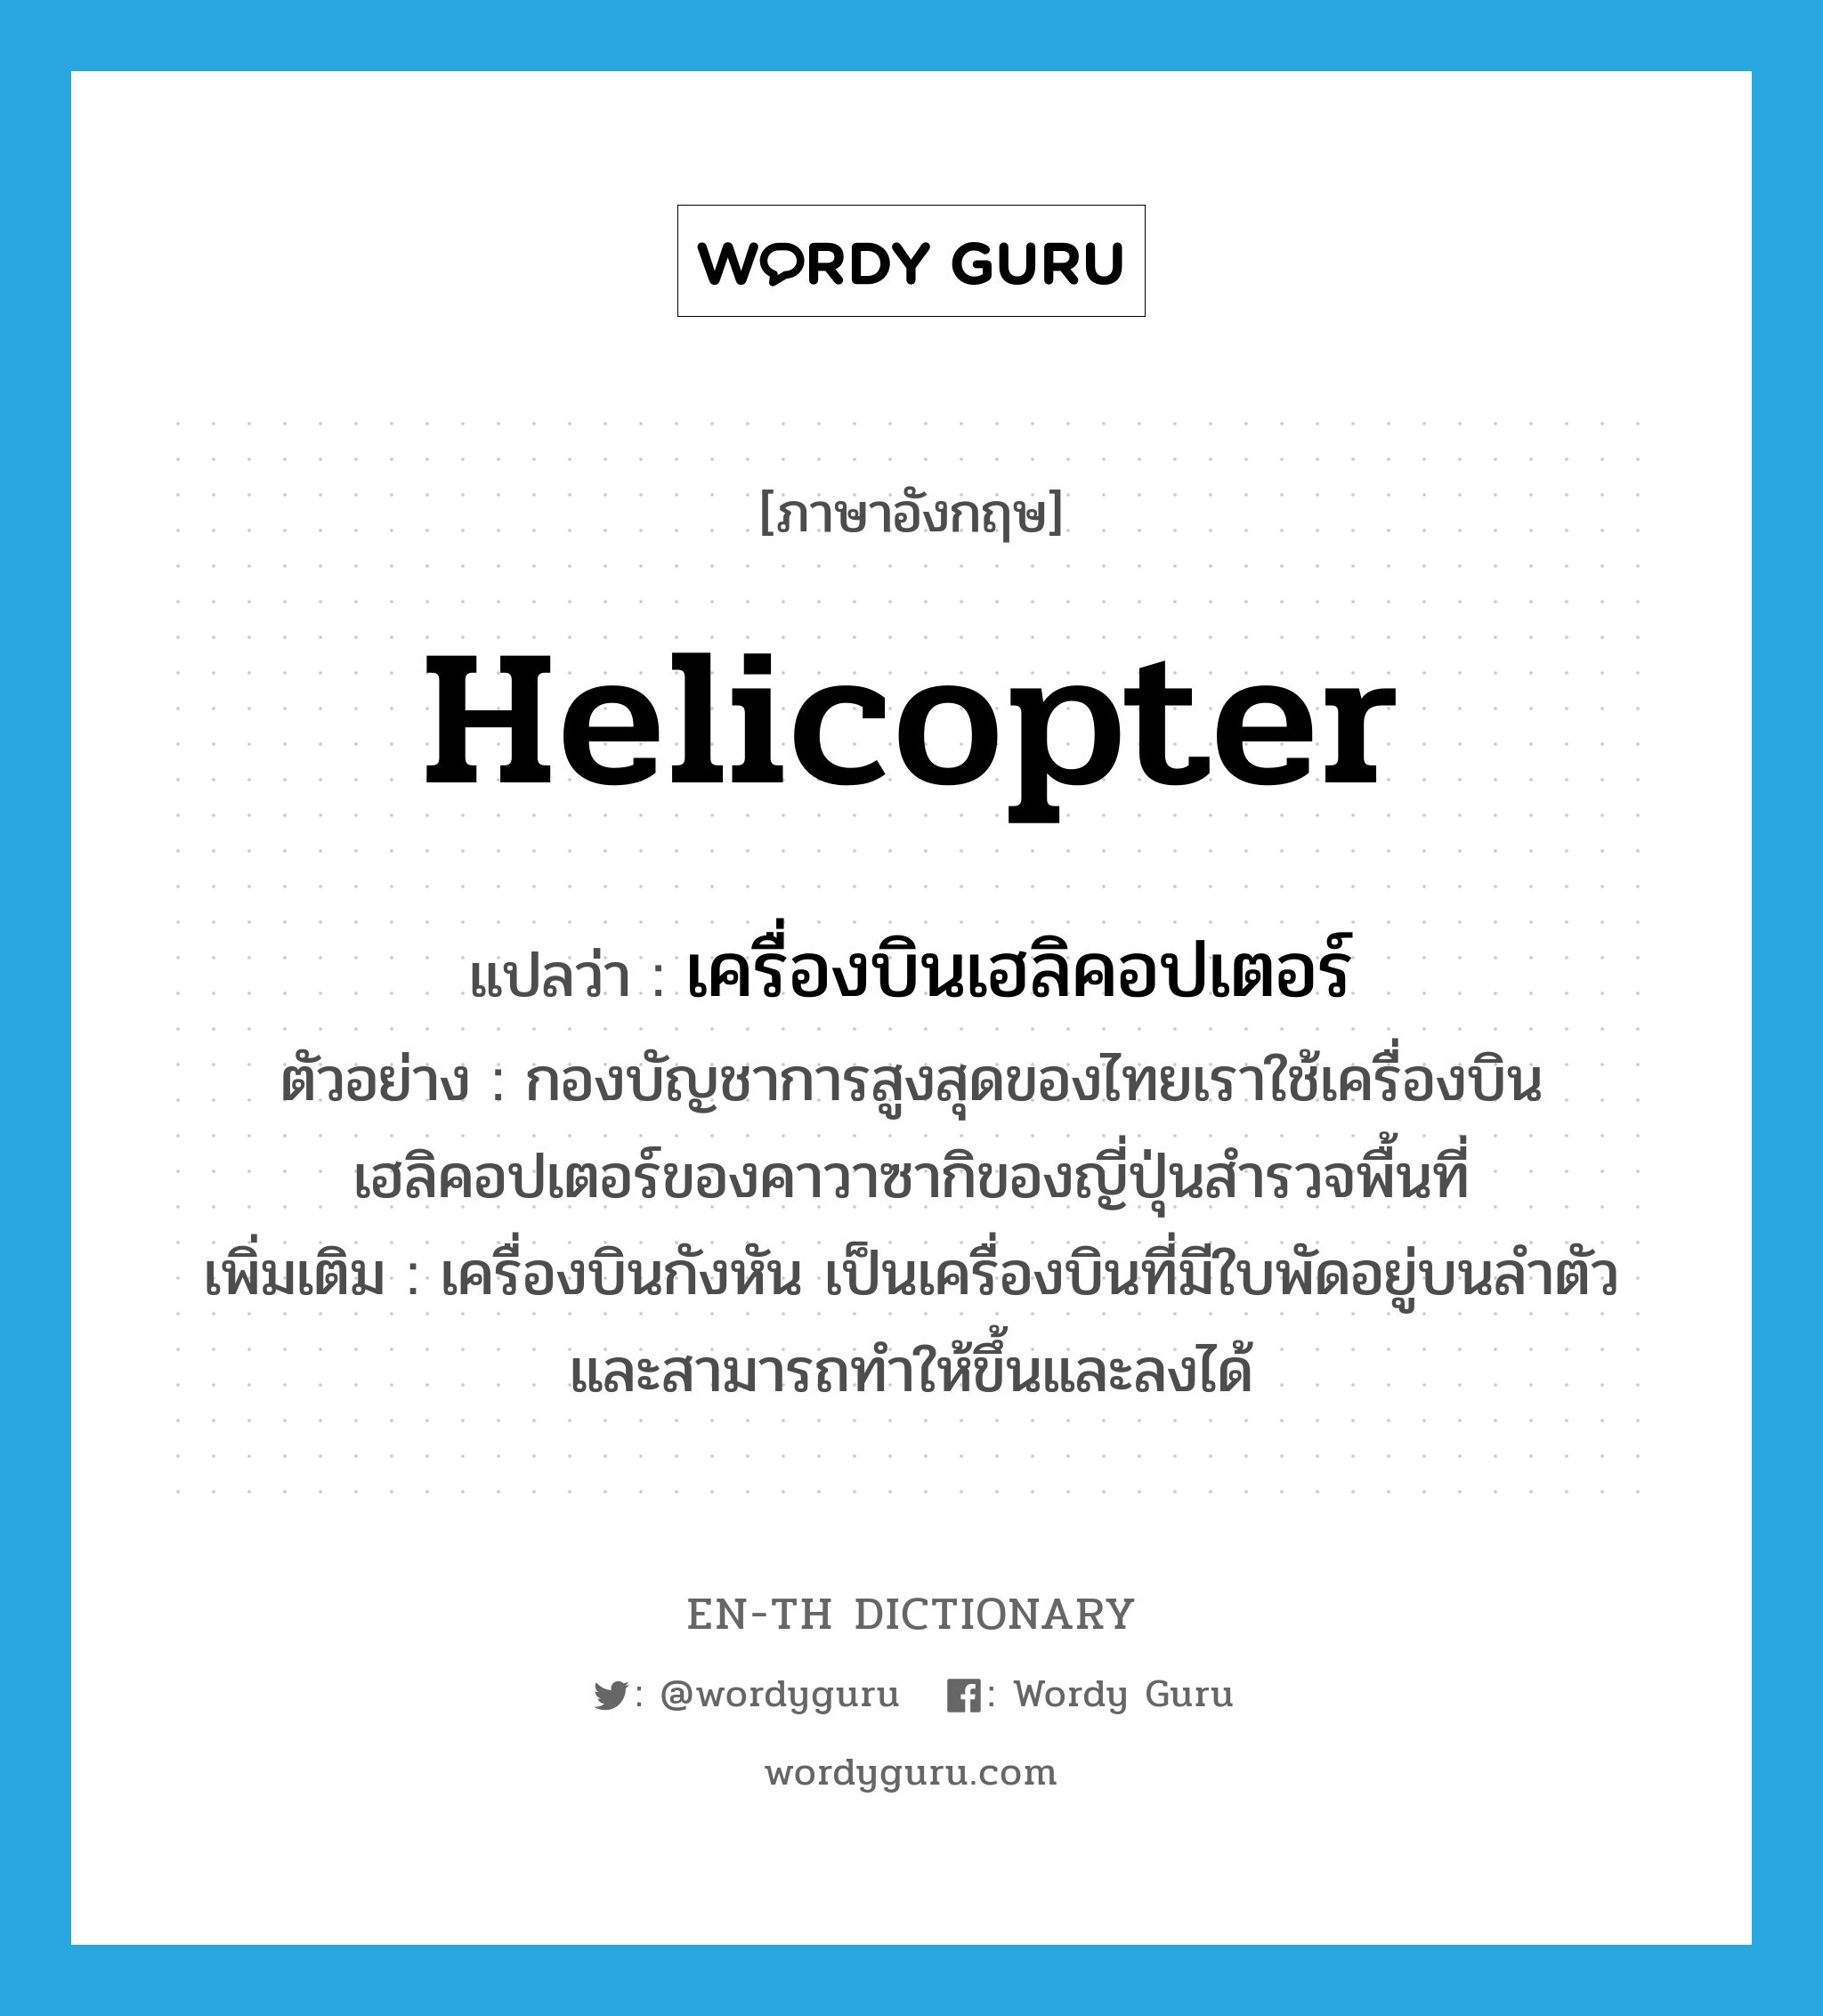 เครื่องบินเฮลิคอปเตอร์ ภาษาอังกฤษ?, คำศัพท์ภาษาอังกฤษ เครื่องบินเฮลิคอปเตอร์ แปลว่า helicopter ประเภท N ตัวอย่าง กองบัญชาการสูงสุดของไทยเราใช้เครื่องบินเฮลิคอปเตอร์ของคาวาซากิของญี่ปุ่นสำรวจพื้นที่ เพิ่มเติม เครื่องบินกังหัน เป็นเครื่องบินที่มีใบพัดอยู่บนลำตัวและสามารถทำให้ขึ้นและลงได้ หมวด N